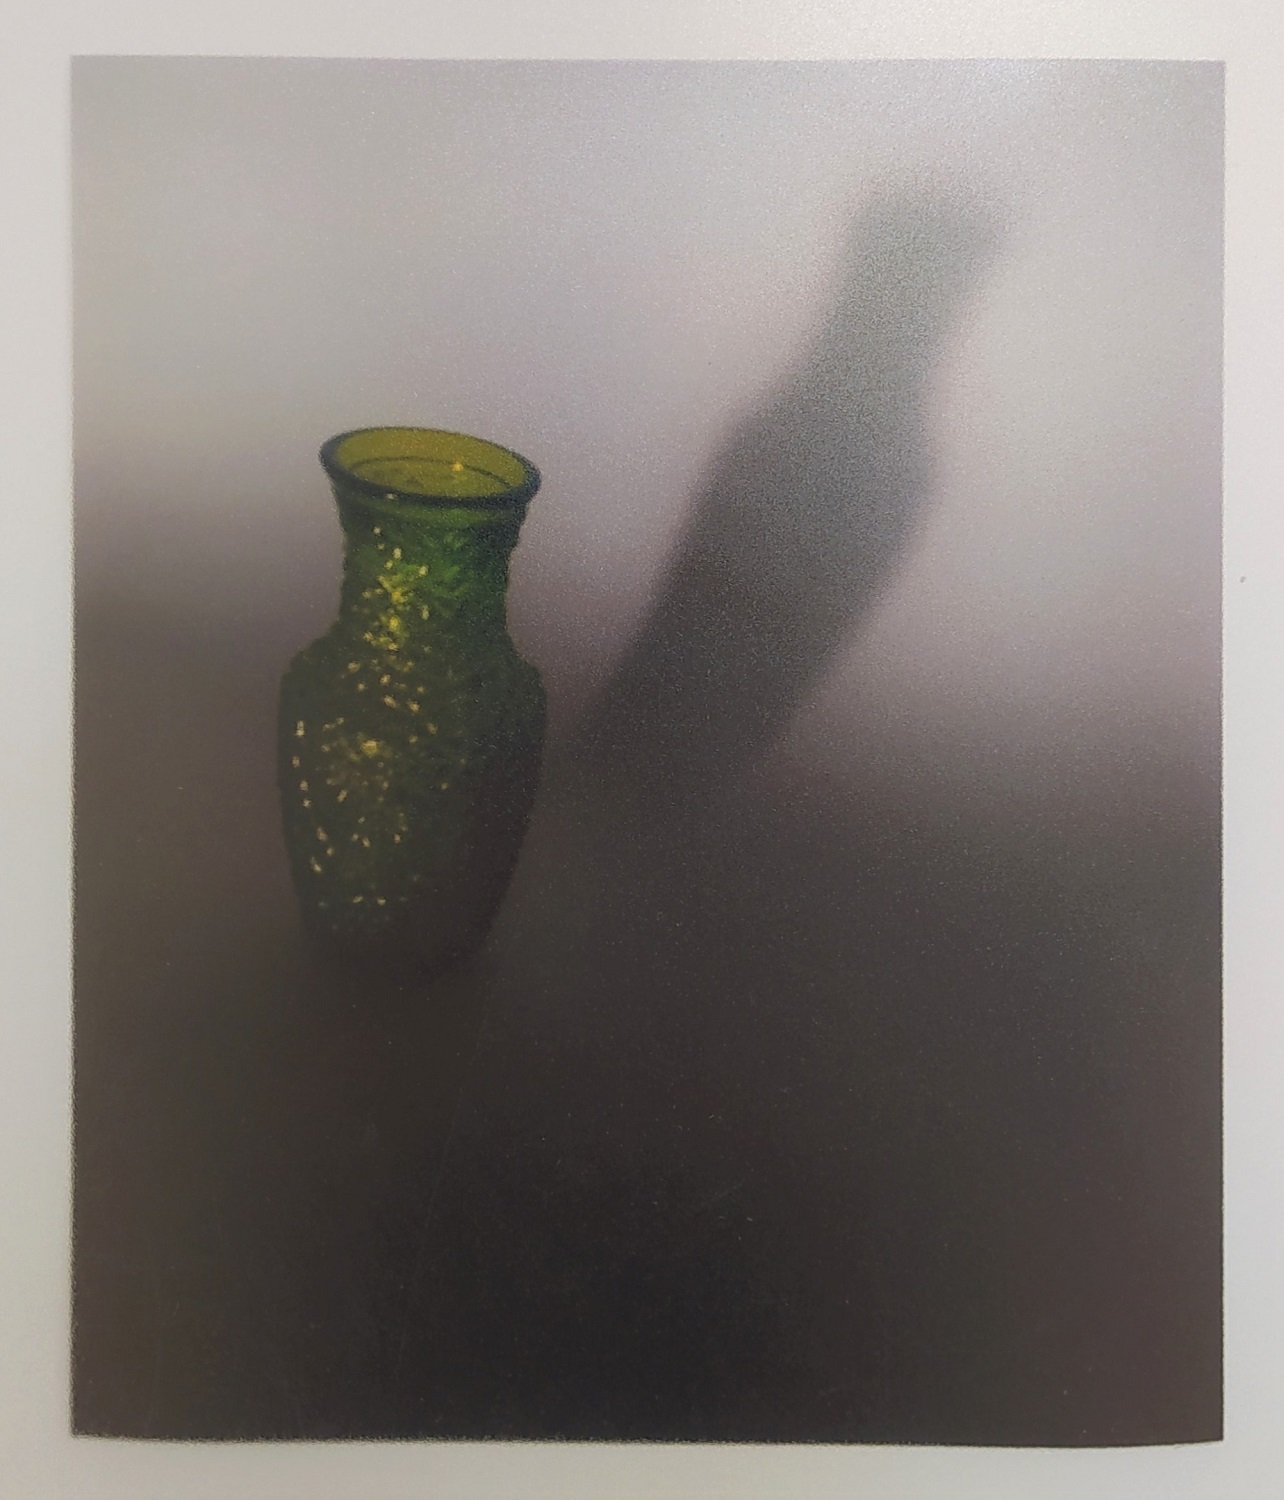 Zdjęcie przedstawiające szklany, zielony wazon.